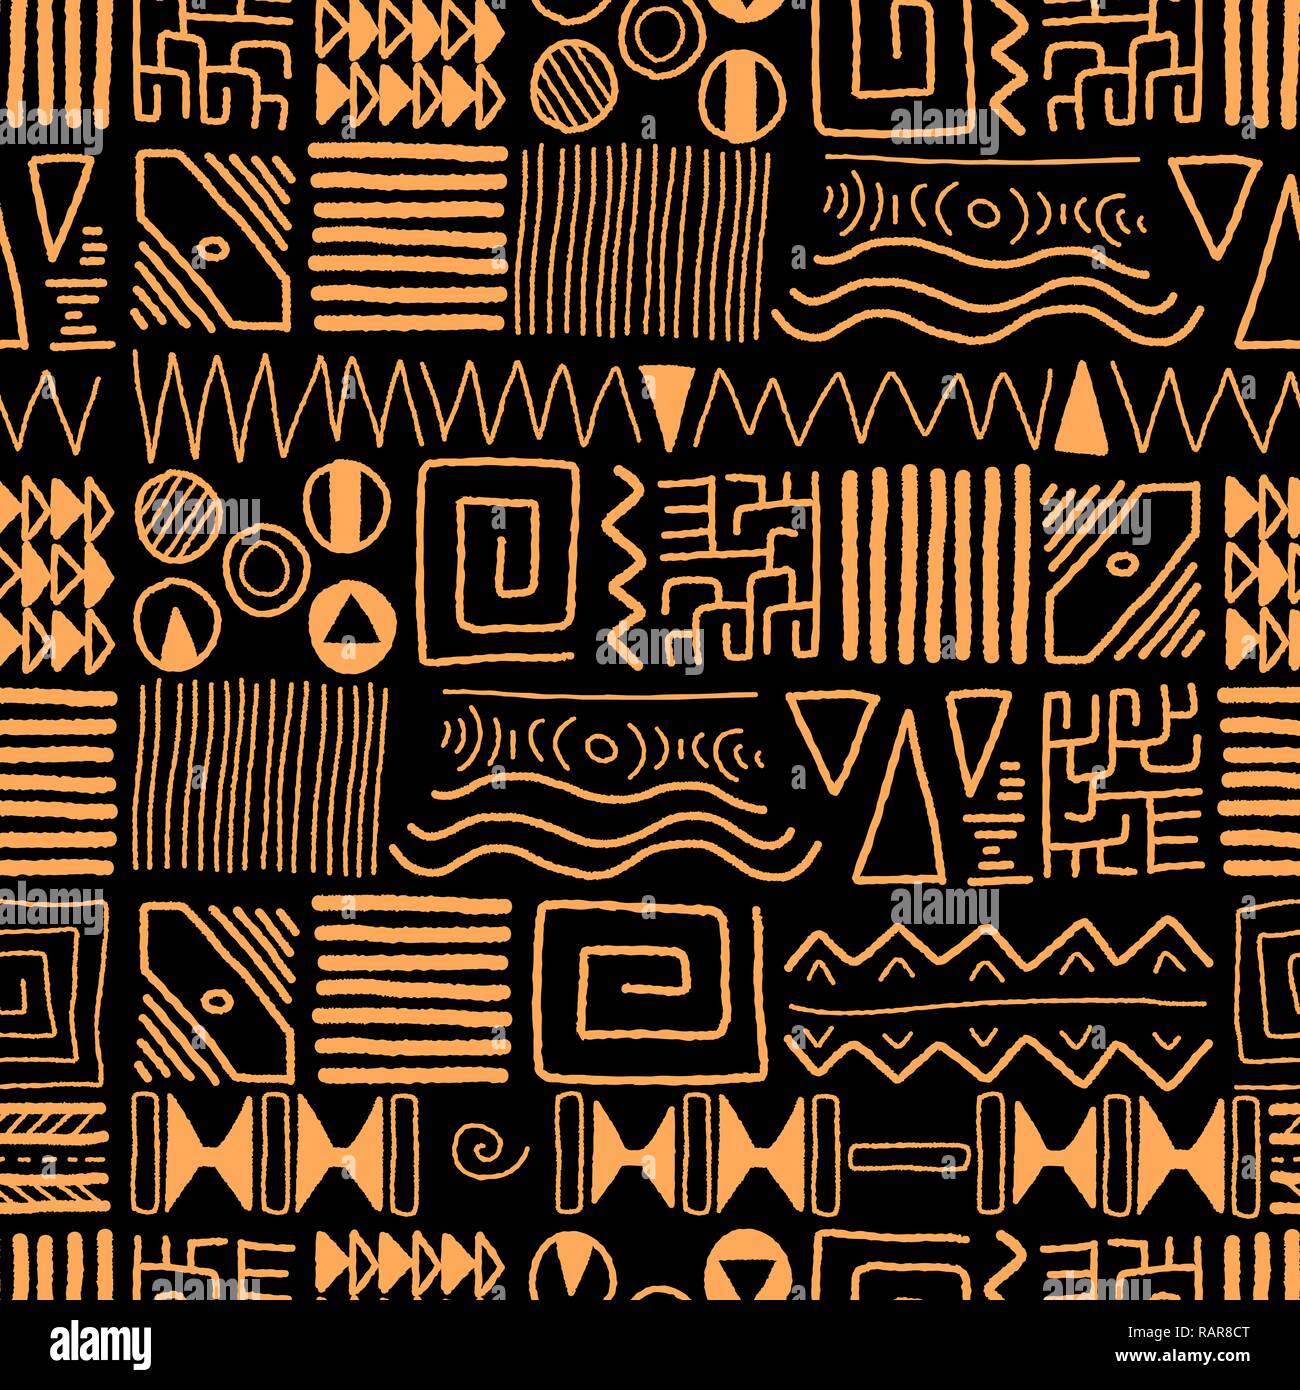 Afrikanische ethnische Muster - Tribal art Hintergrund. Afrika Design. Stock Vektor